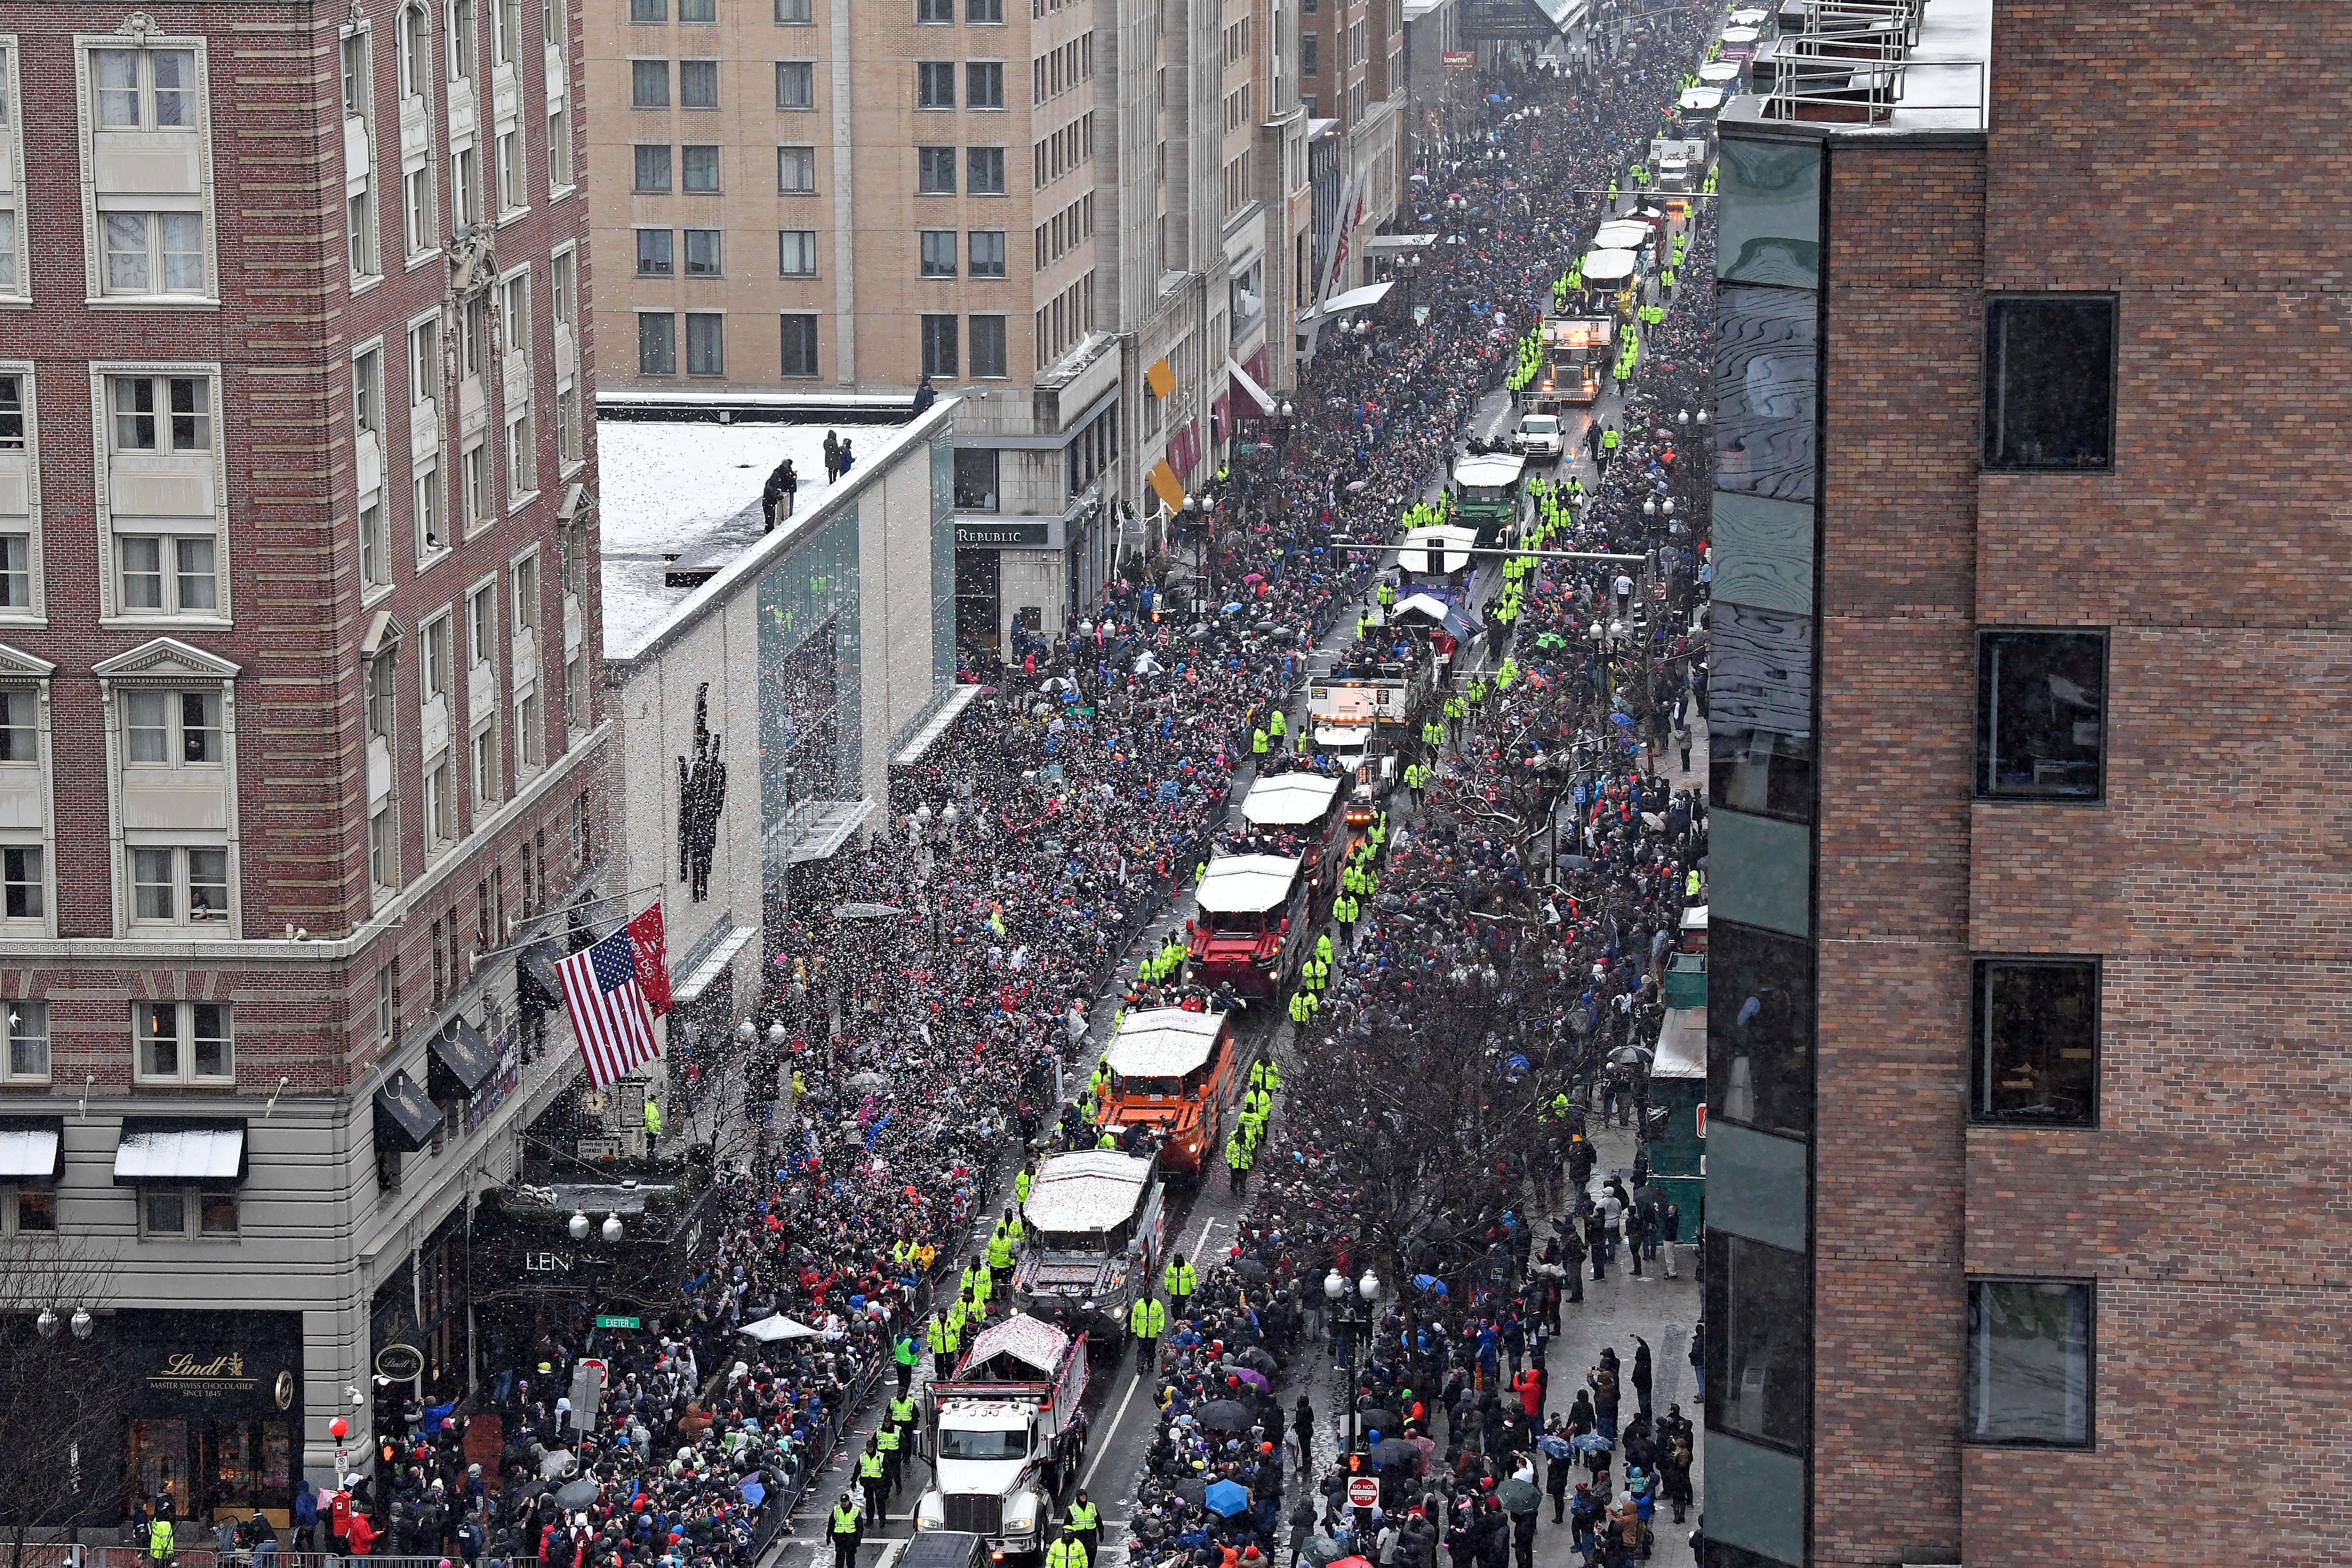 Pats fans pack Super Bowl parade despite weather